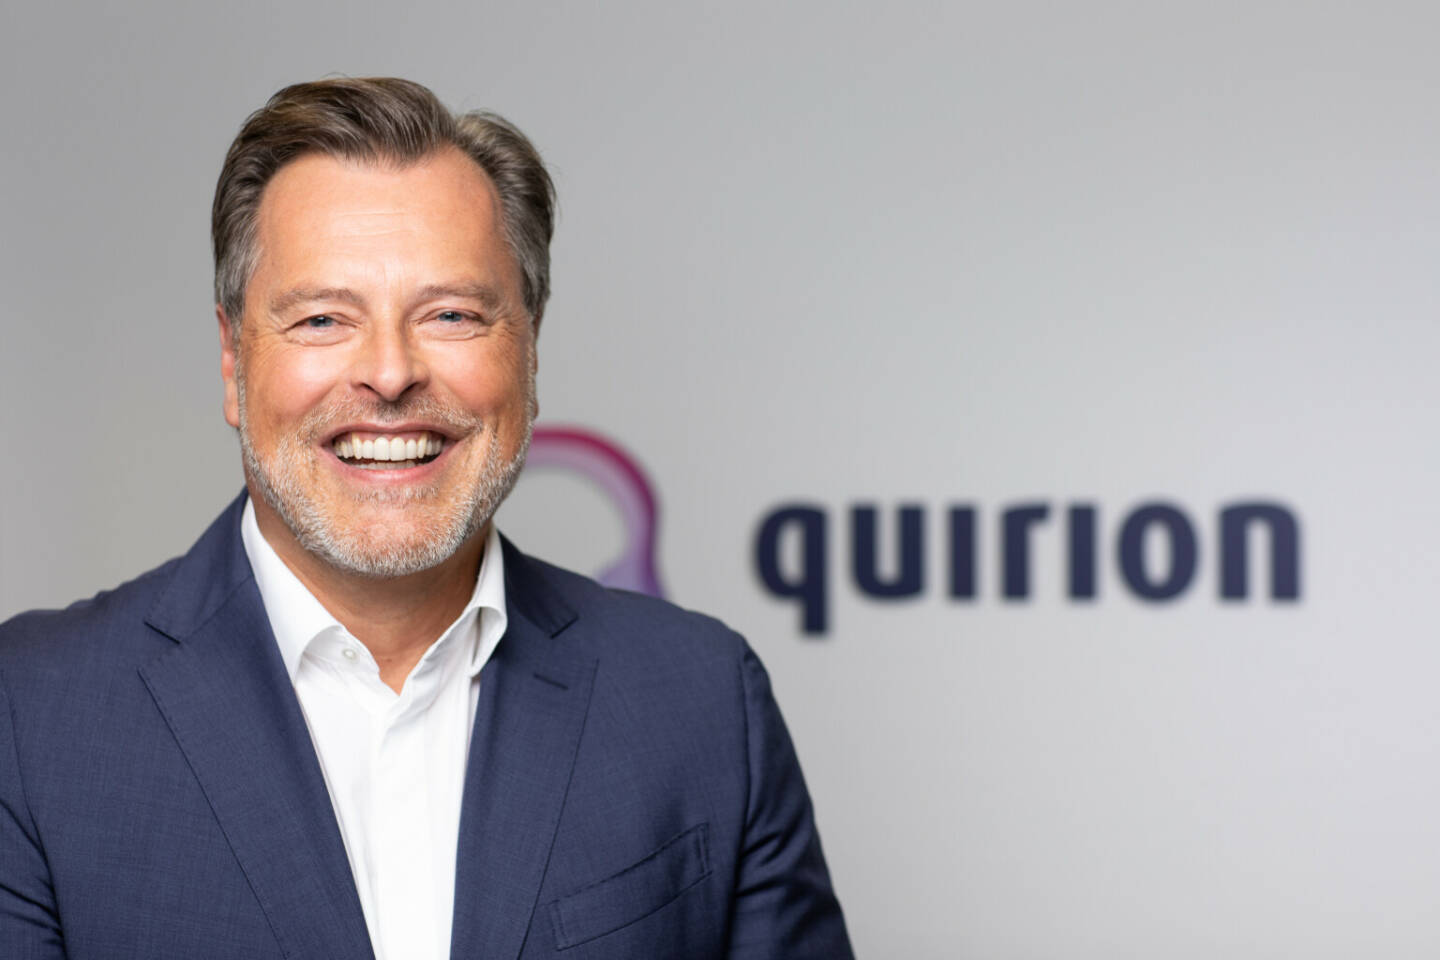 quirion - eine Tocher der Quirin Privatbank AG: quirion schließt Finanzierungsrunde erfolgreich ab und investiert in weiteres Wachstum, Martin Daut, CEO quirion AG, Credit: quirion